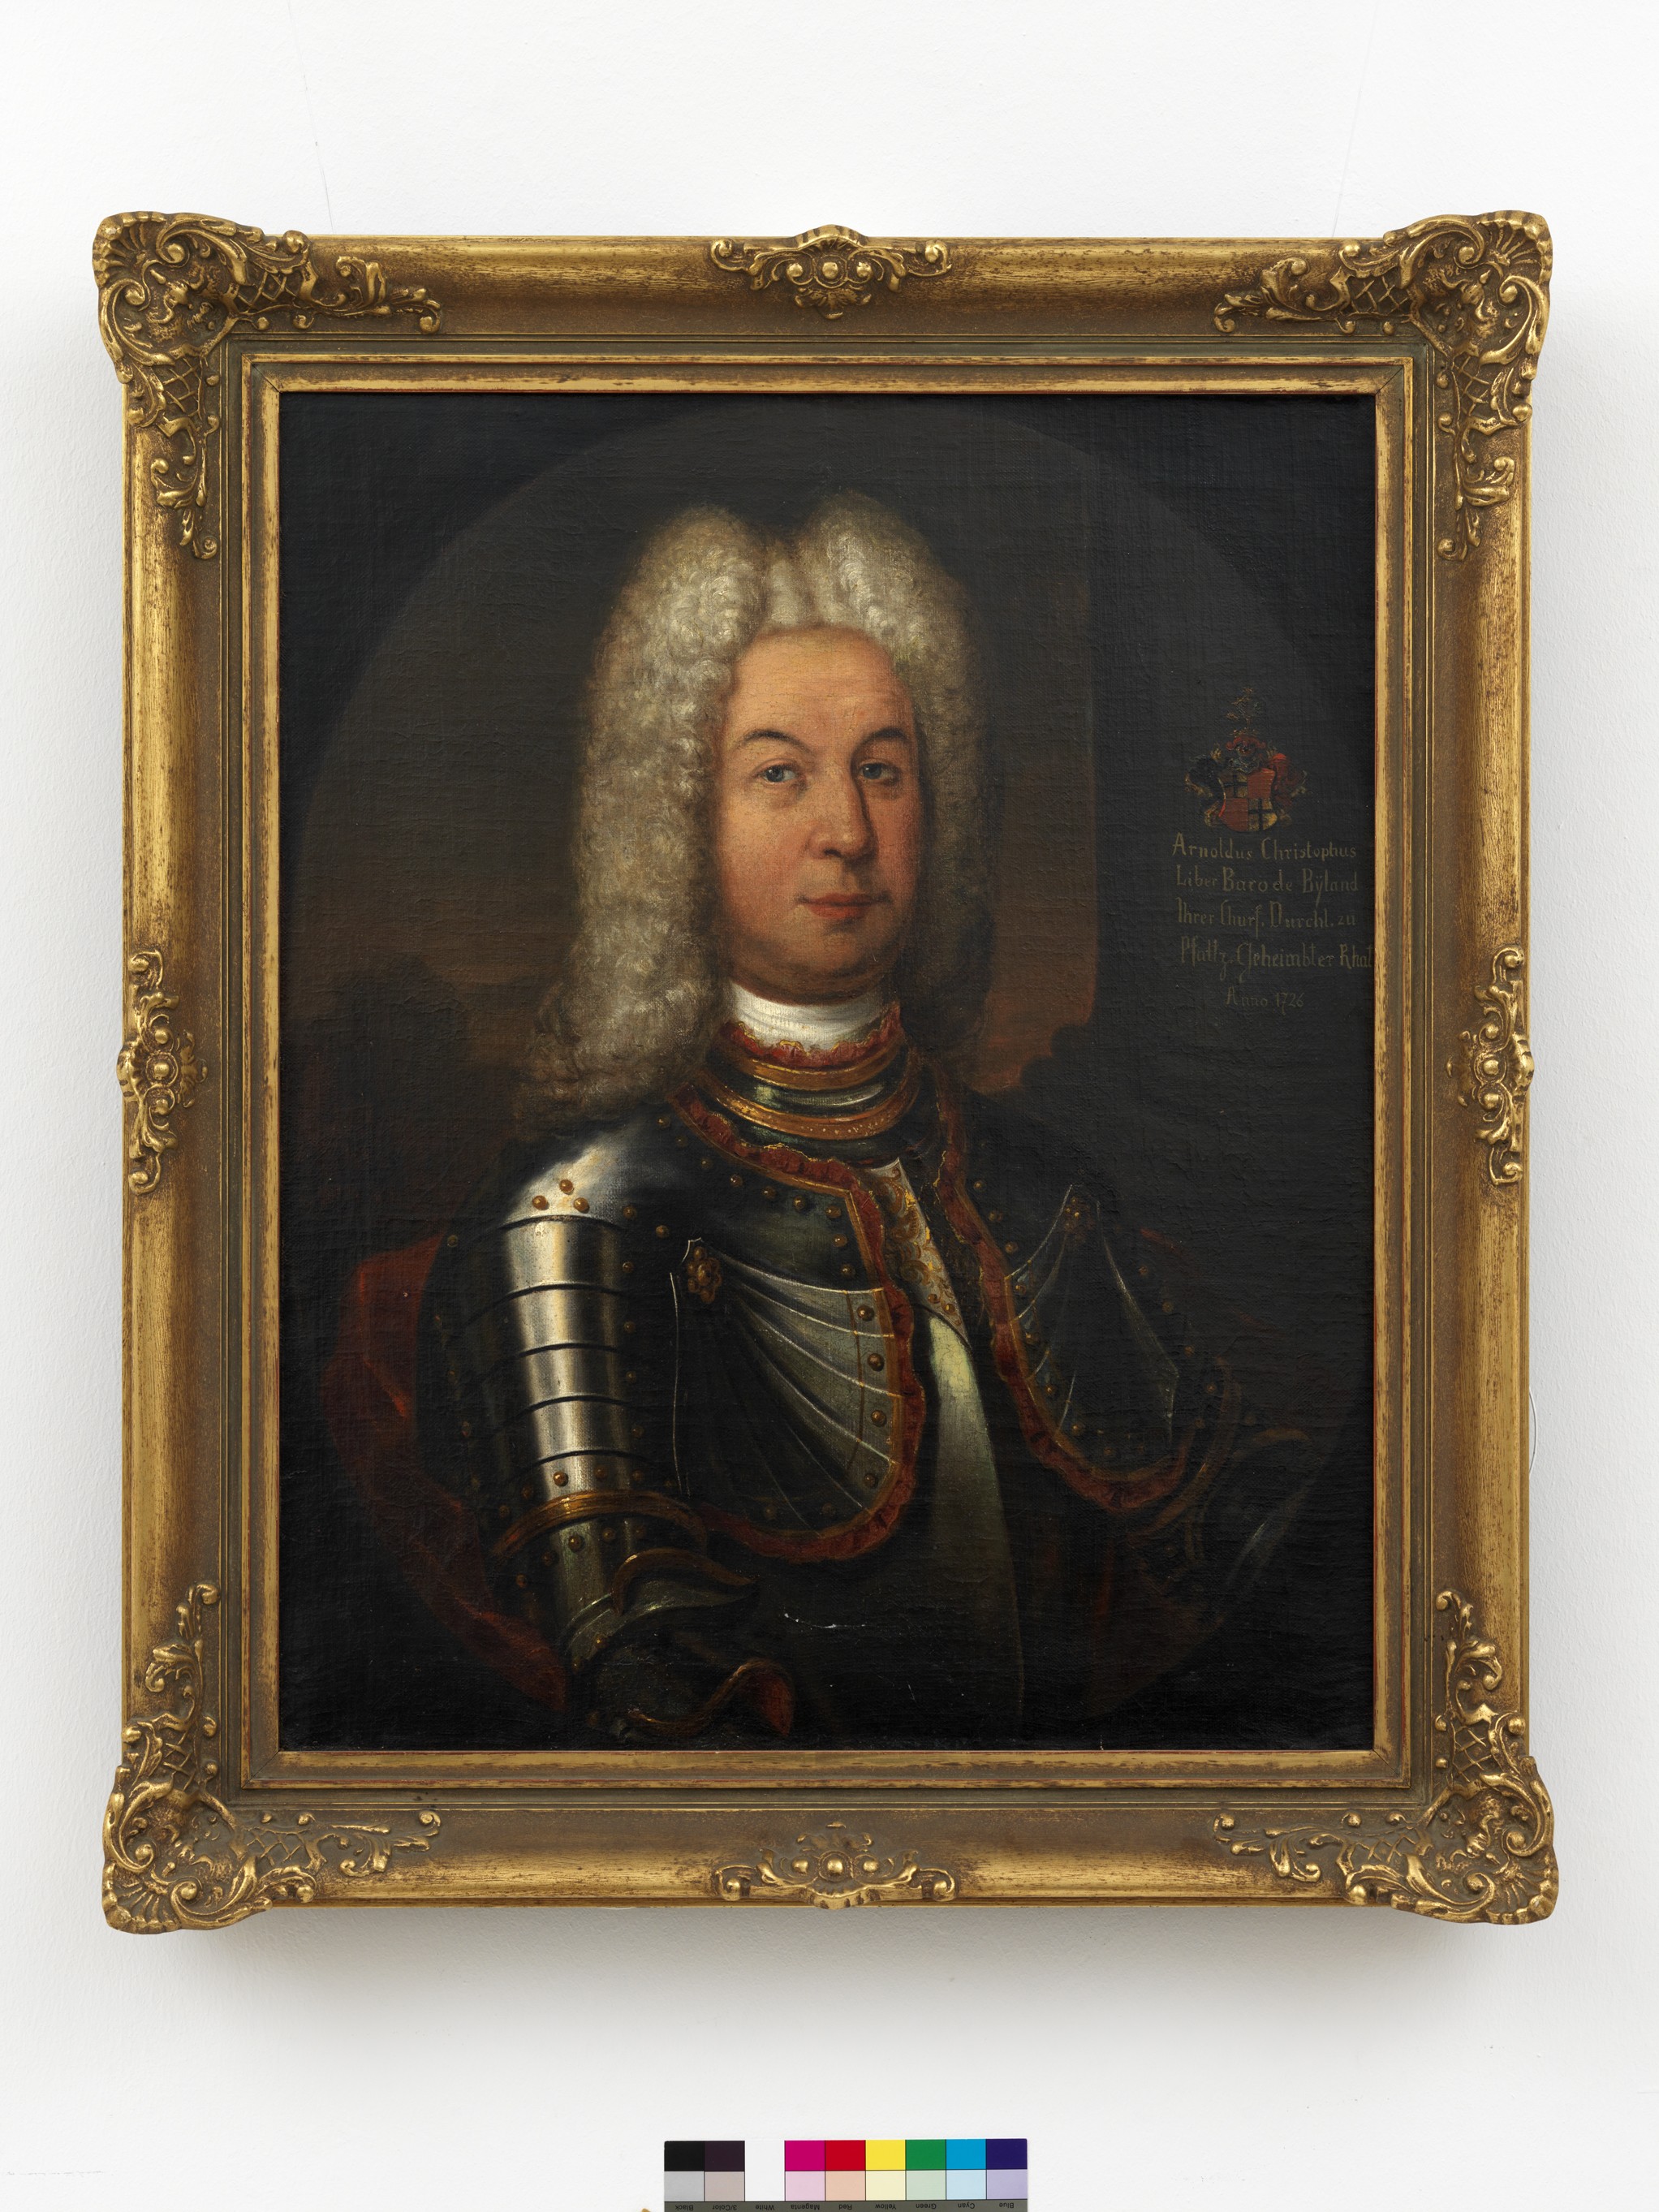 Arnold Christoph Freiherr von Bylandt, Herr zu Rheydt und Schwarzenberg, 1680-1730 (Städtisches Museum Schloss Rheydt CC BY)